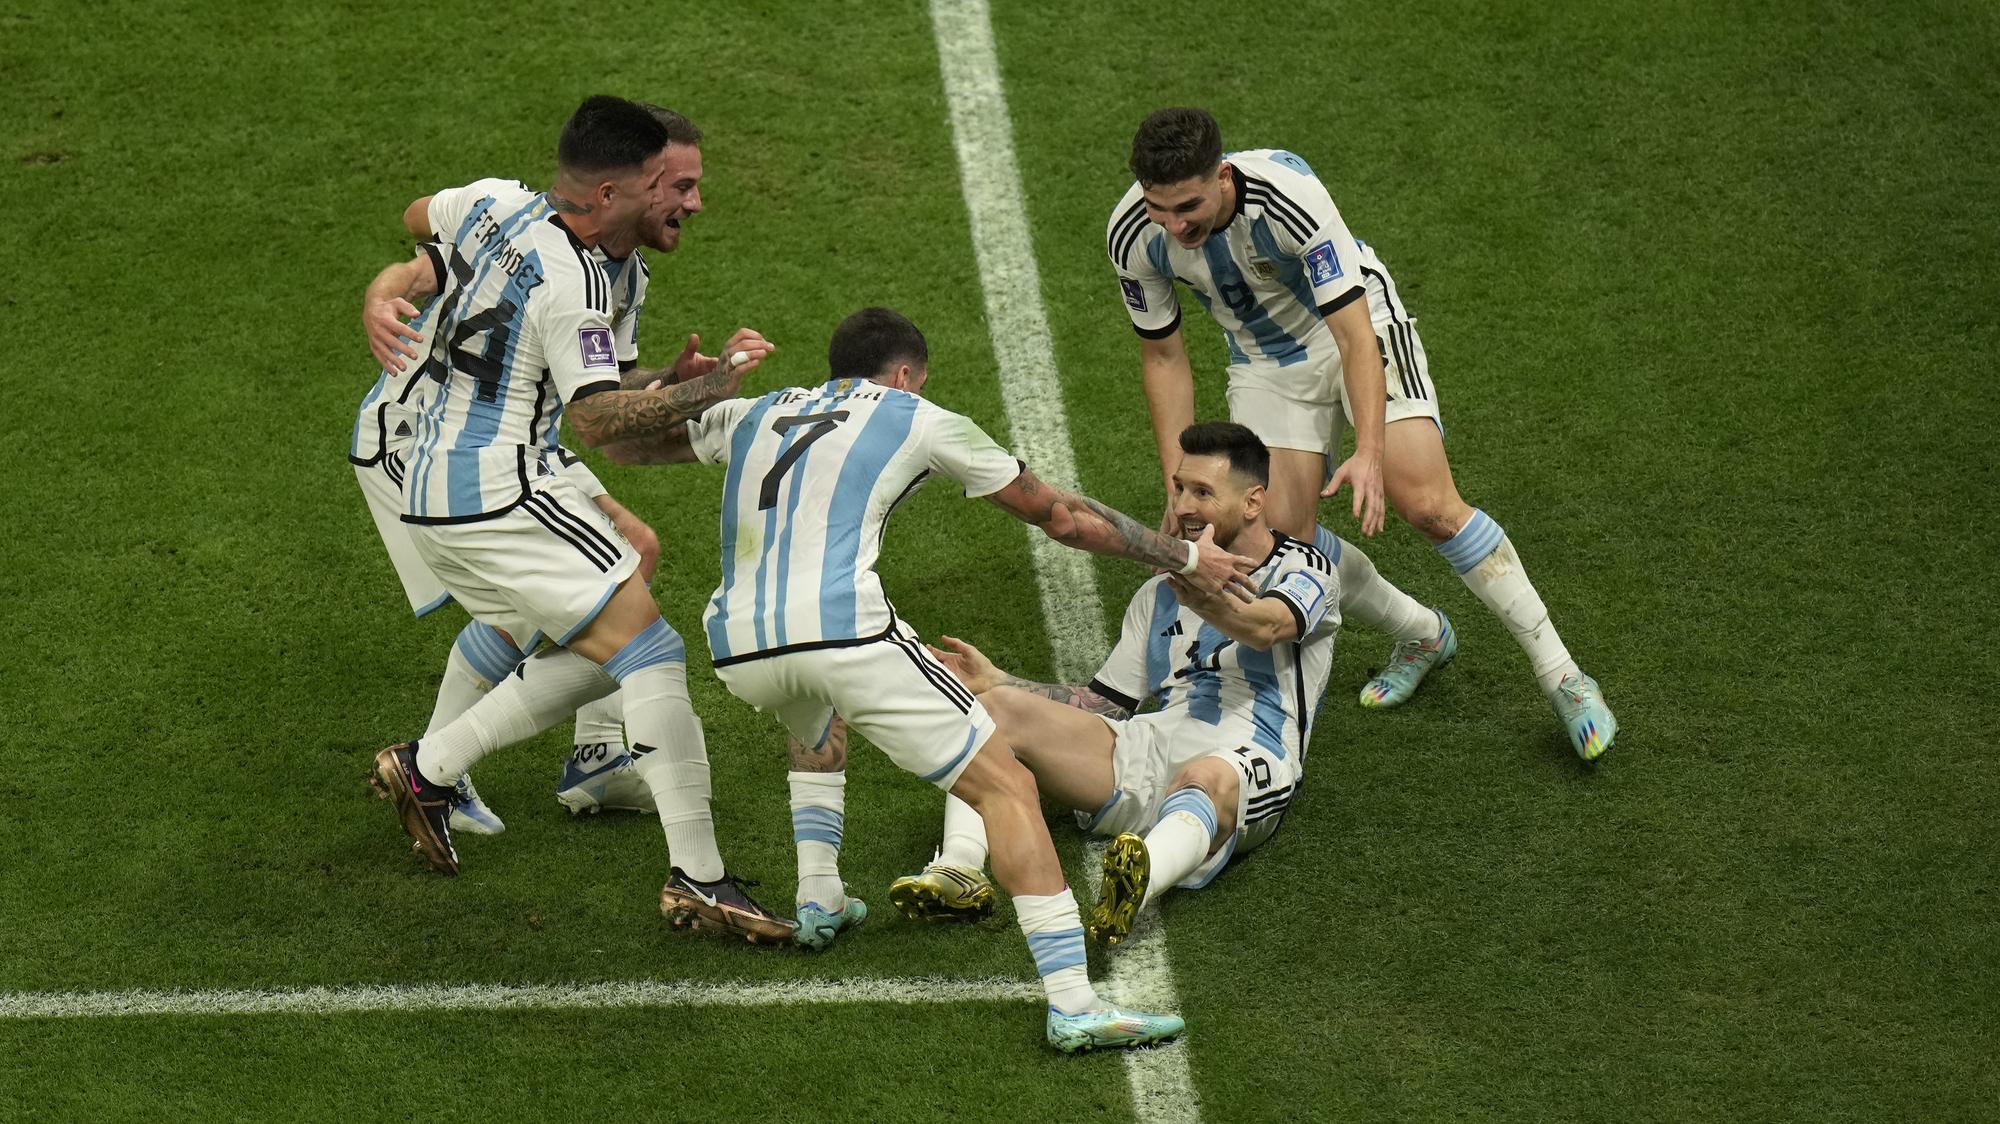 MS vo futbale 2022 - Argentína zarobila poriadny balík peňazí | Šport.sk